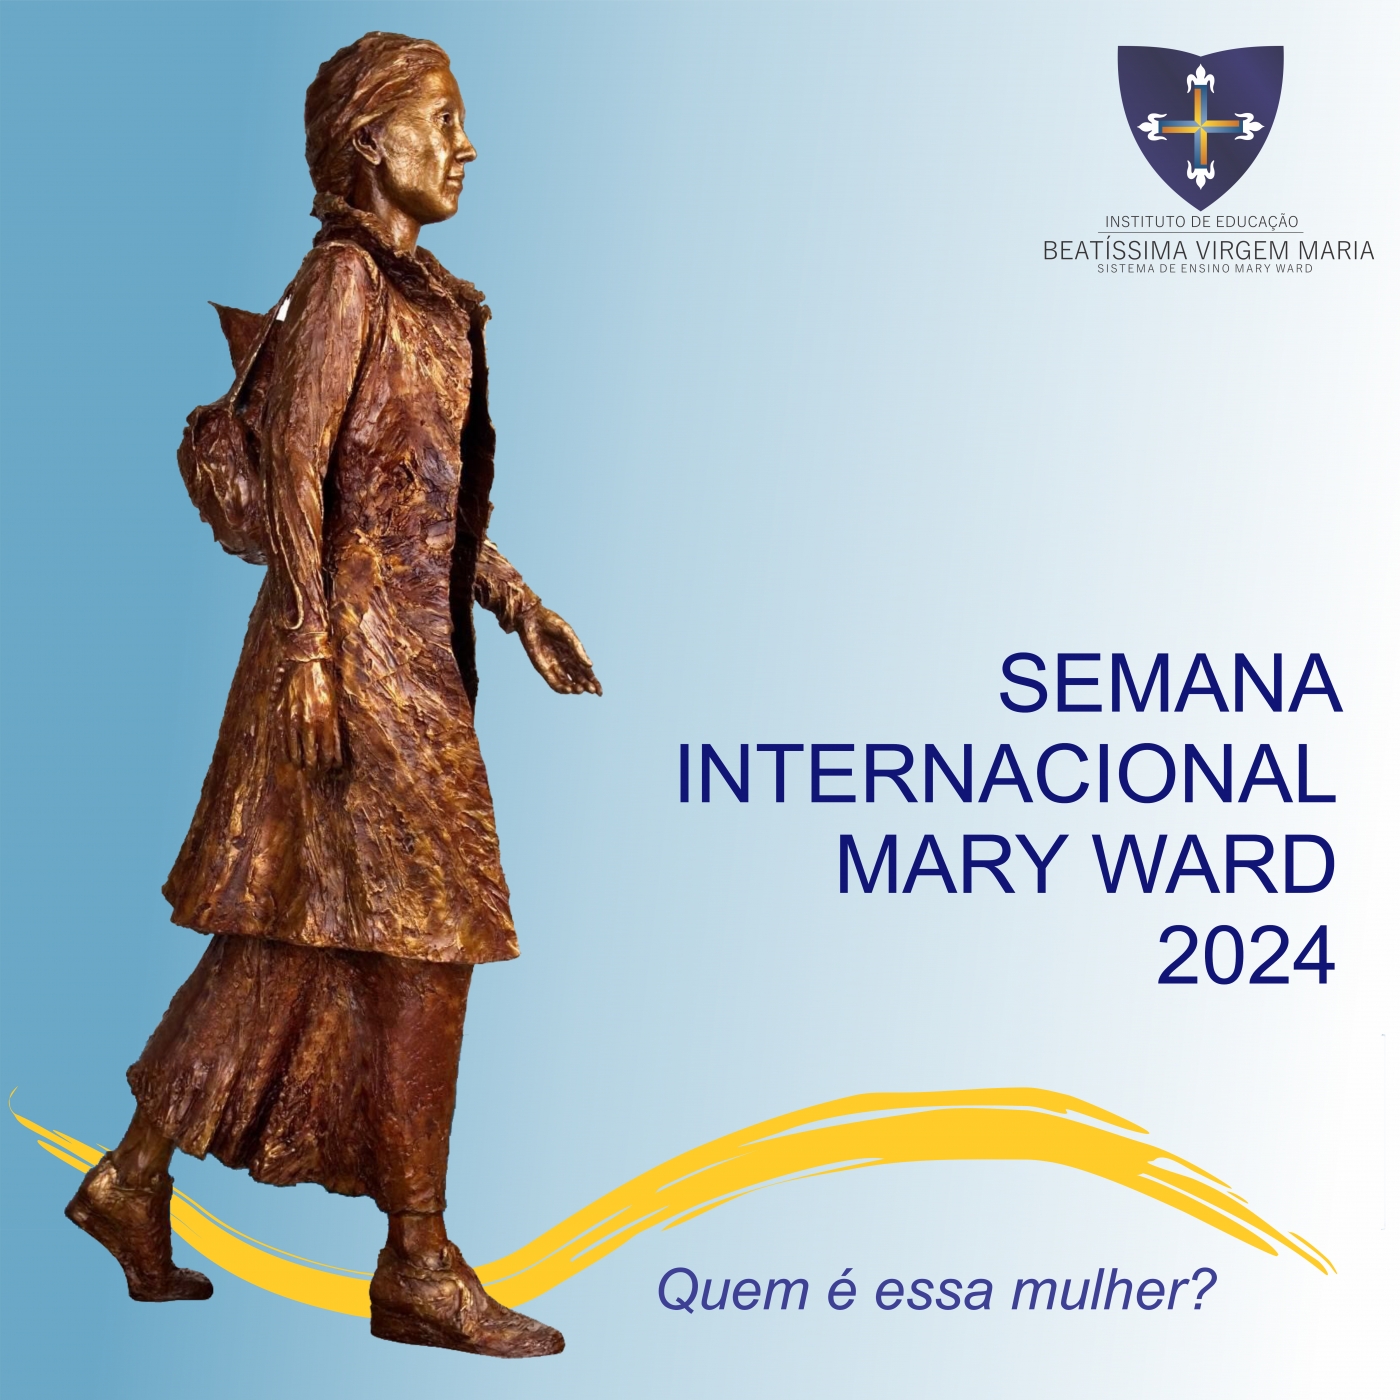 Semana Internacional Mary Ward